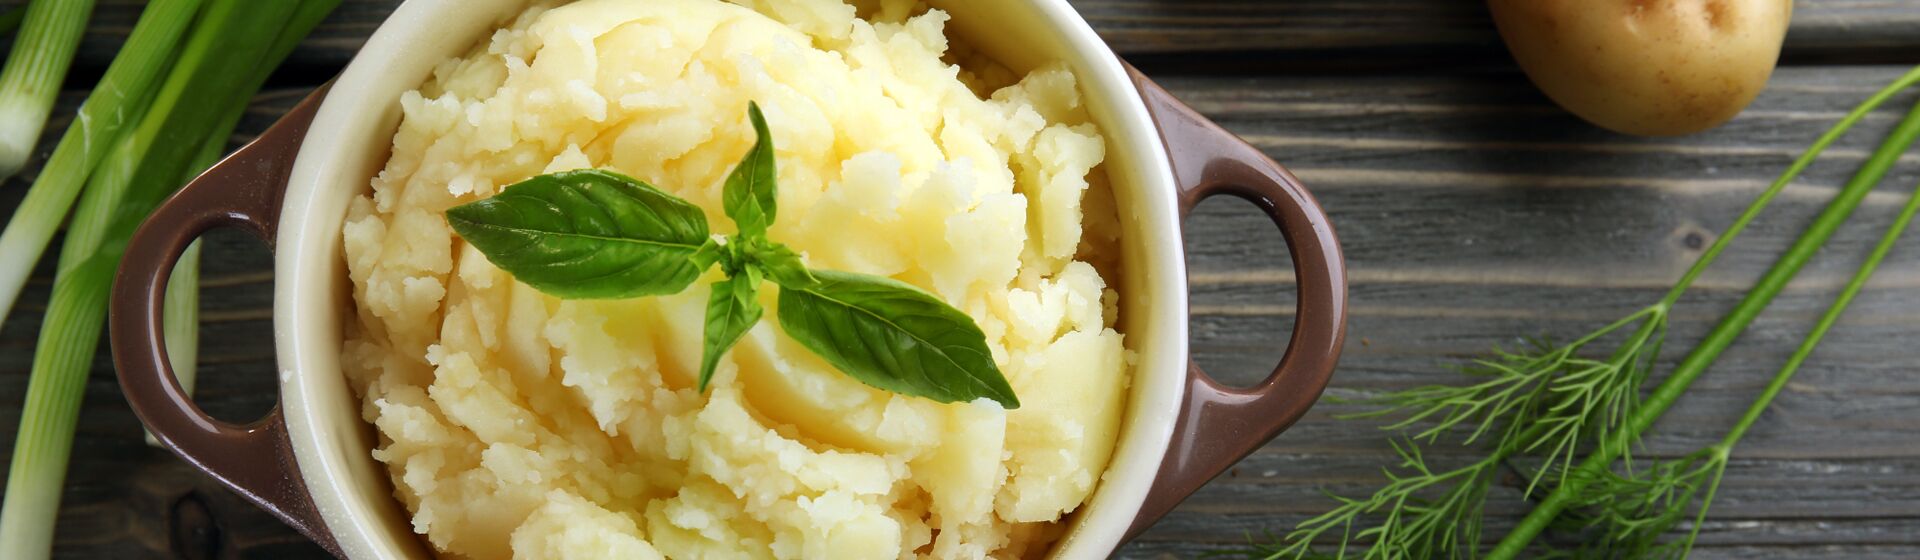 Как быстро сварить картофель в кастрюле (для пюре)